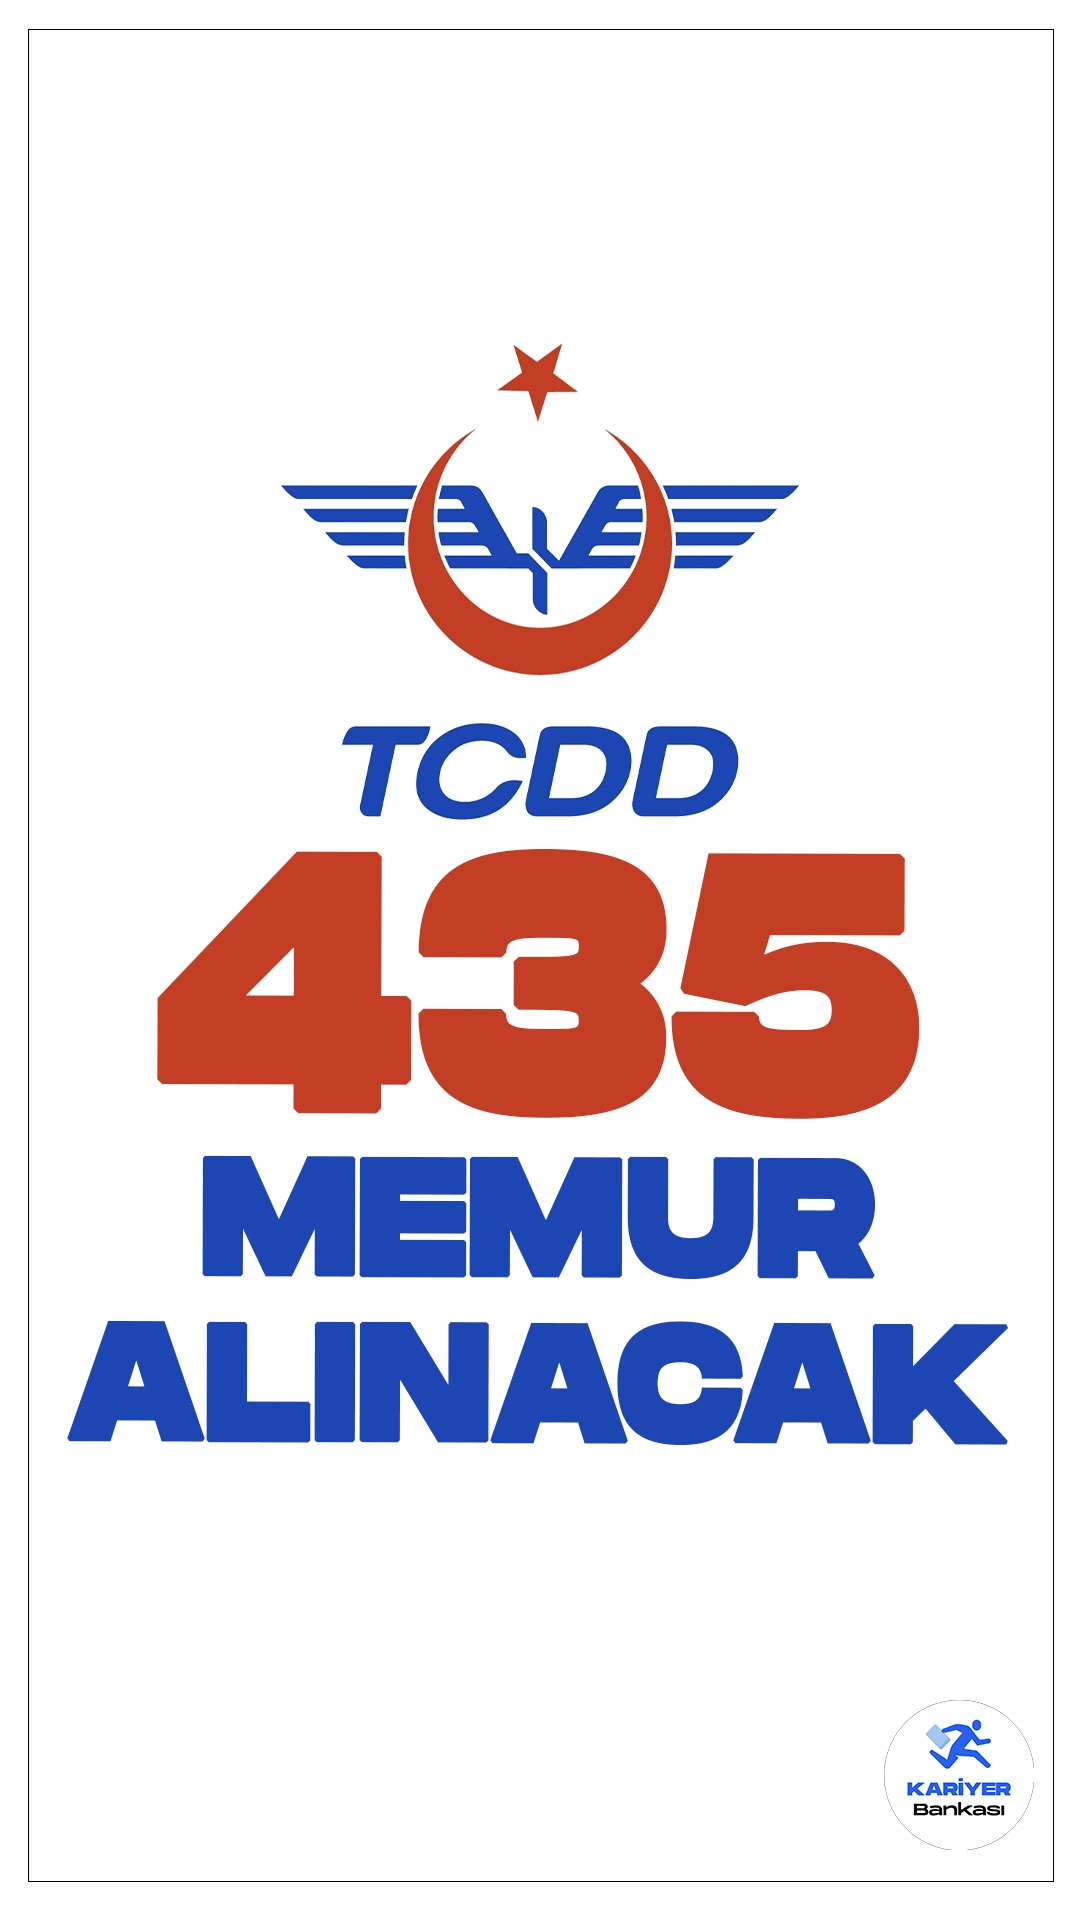 TCDD 435 Memur Alımı Yapacak.T.C Devlet Demiryolları İşletmesi Genel Müdürlüğü ve Devlet Demiryolları Taşımacılık A.Ş. (TCDD) 435 Memur Alımı Yapacak.